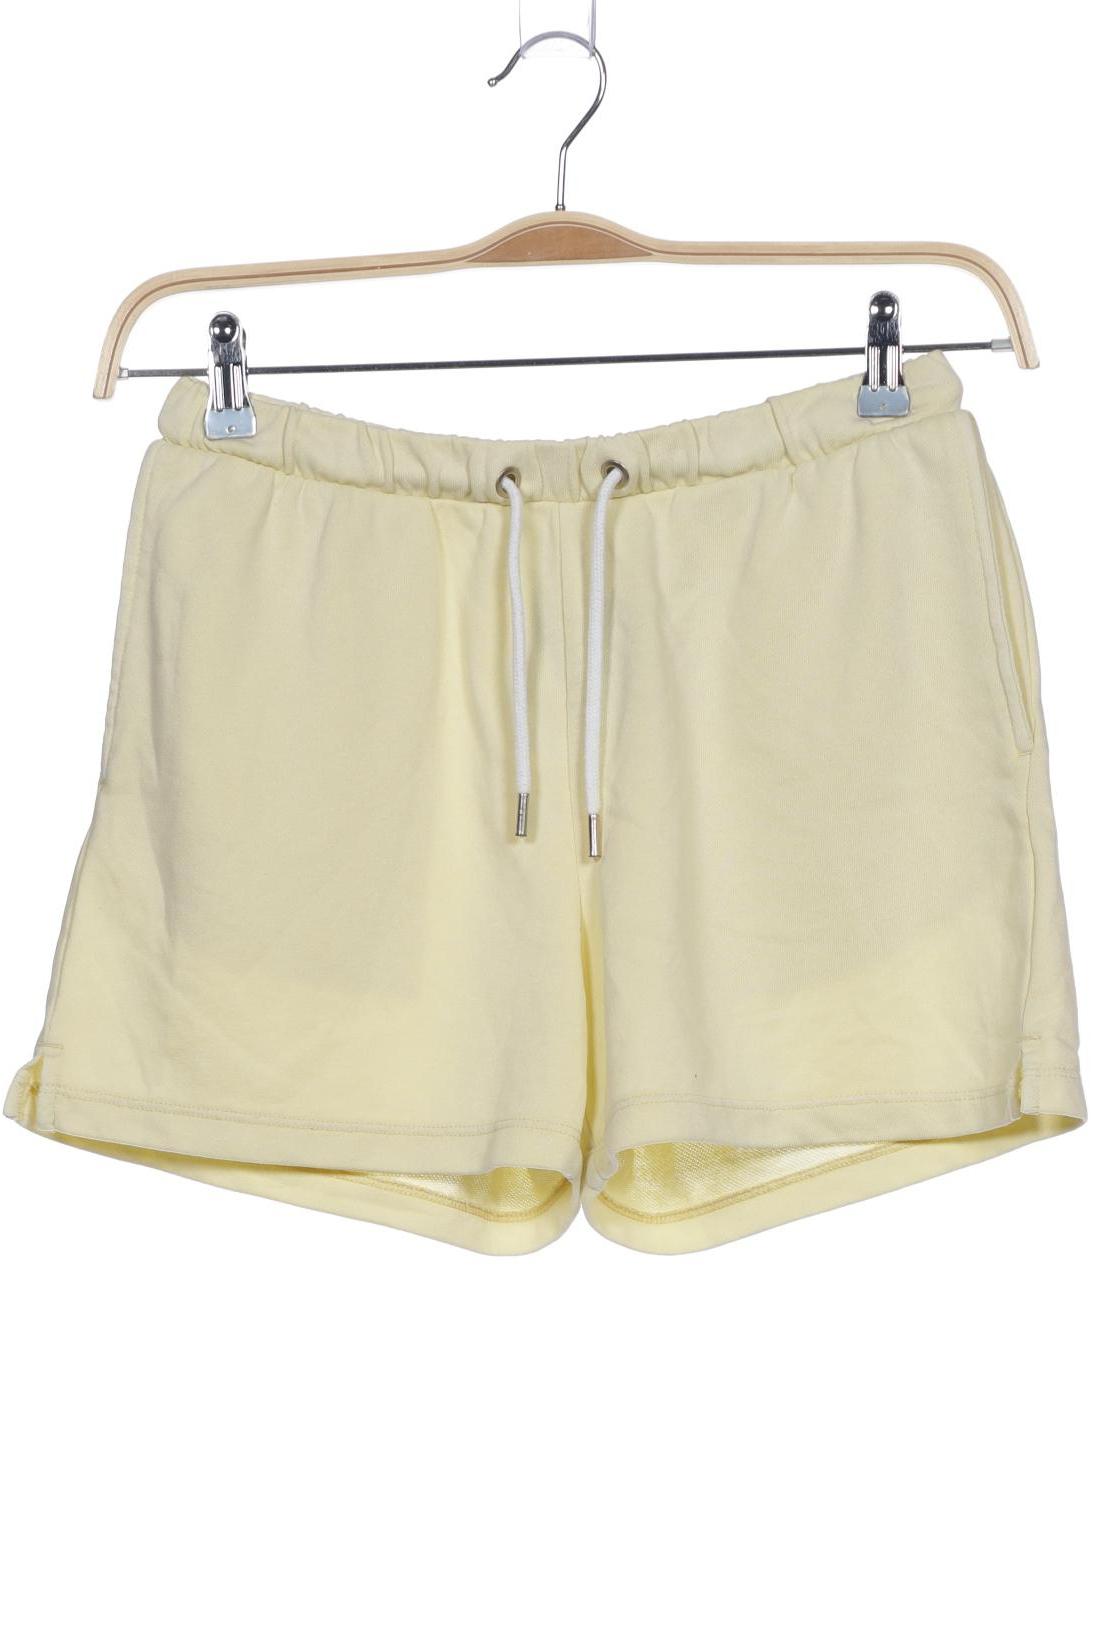 H&M Damen Shorts, gelb von H&M